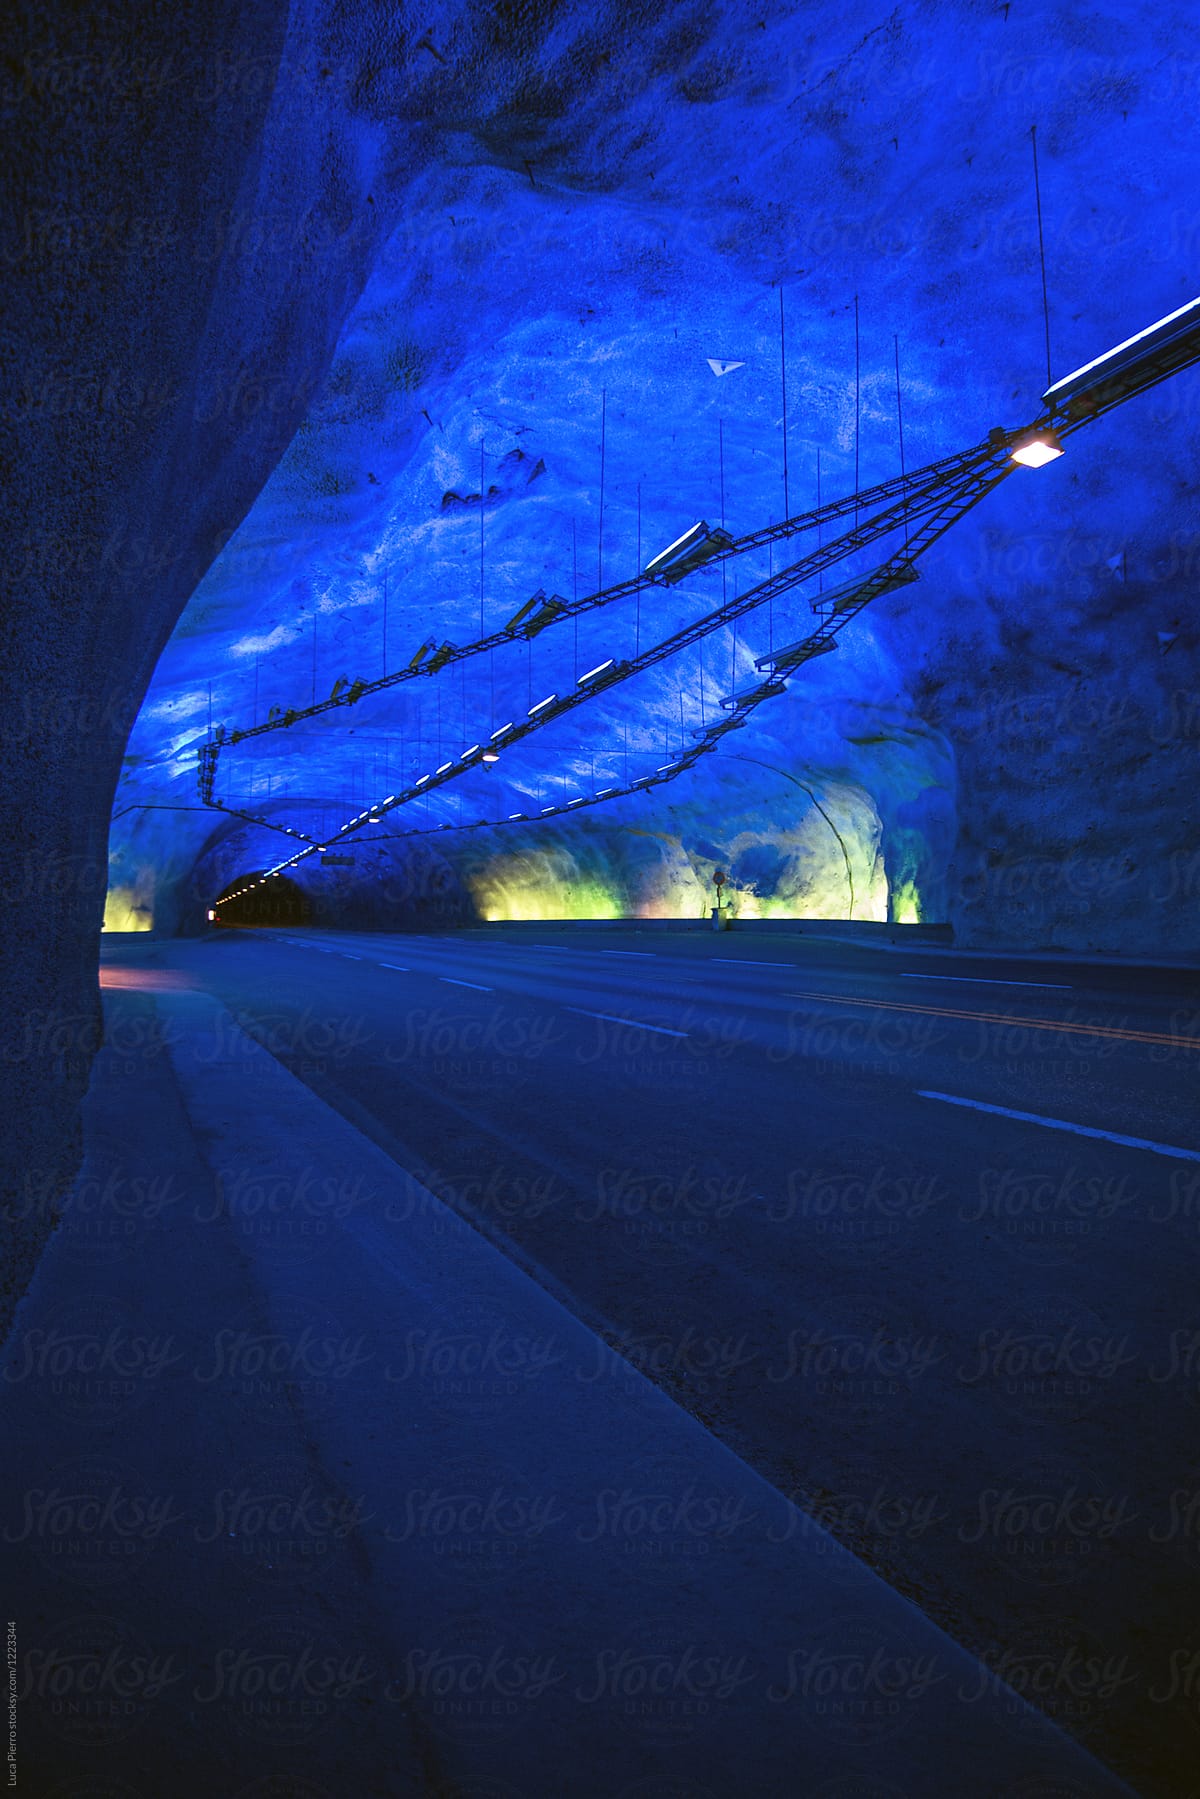 Futuristic tunnel with blue neon lights, Lærdalstunnelen, Norway